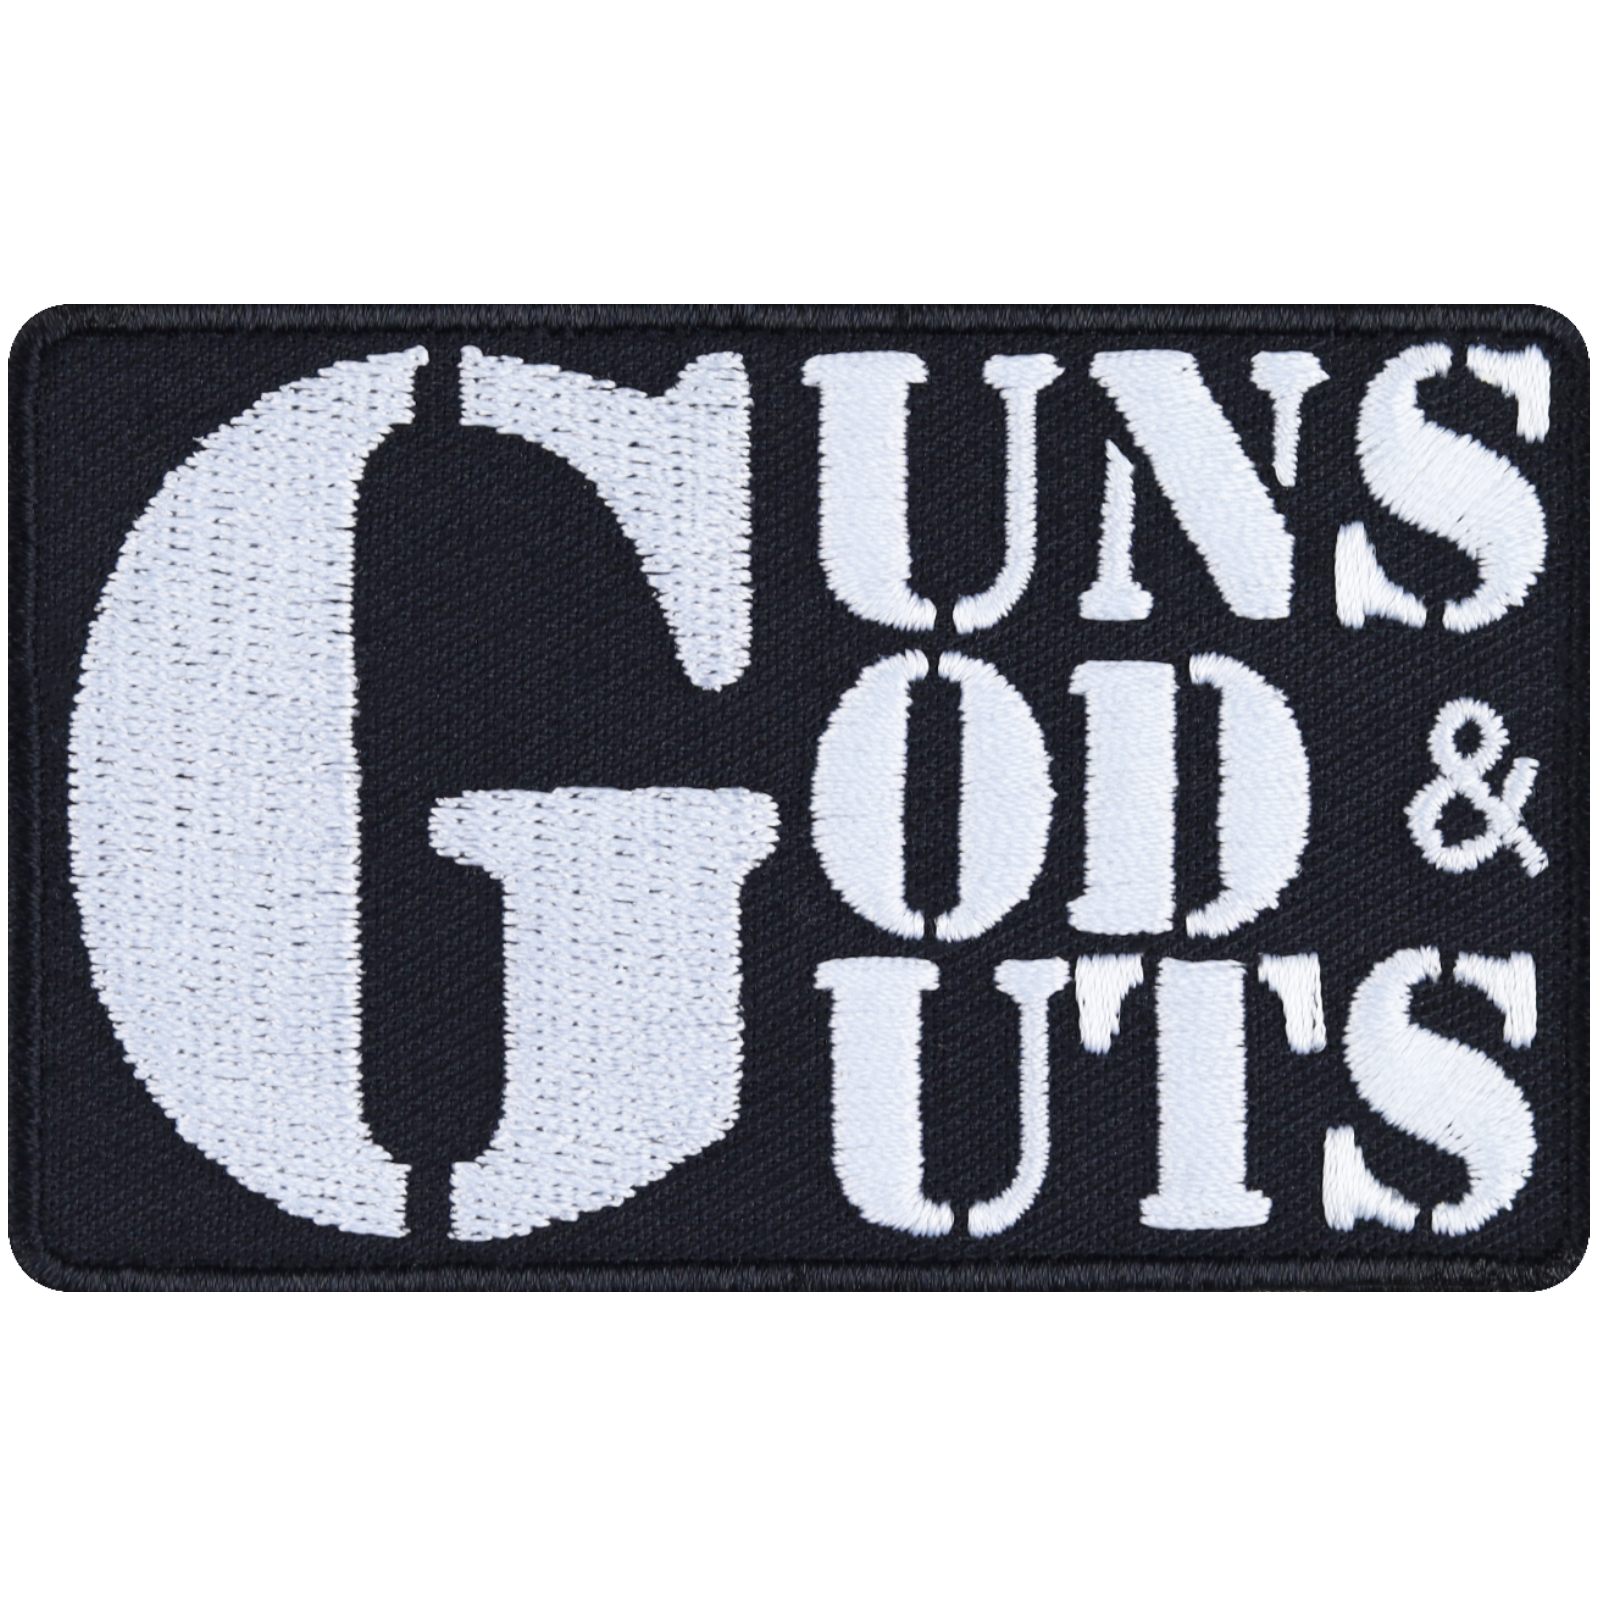 Guns, gods & guts - Patch